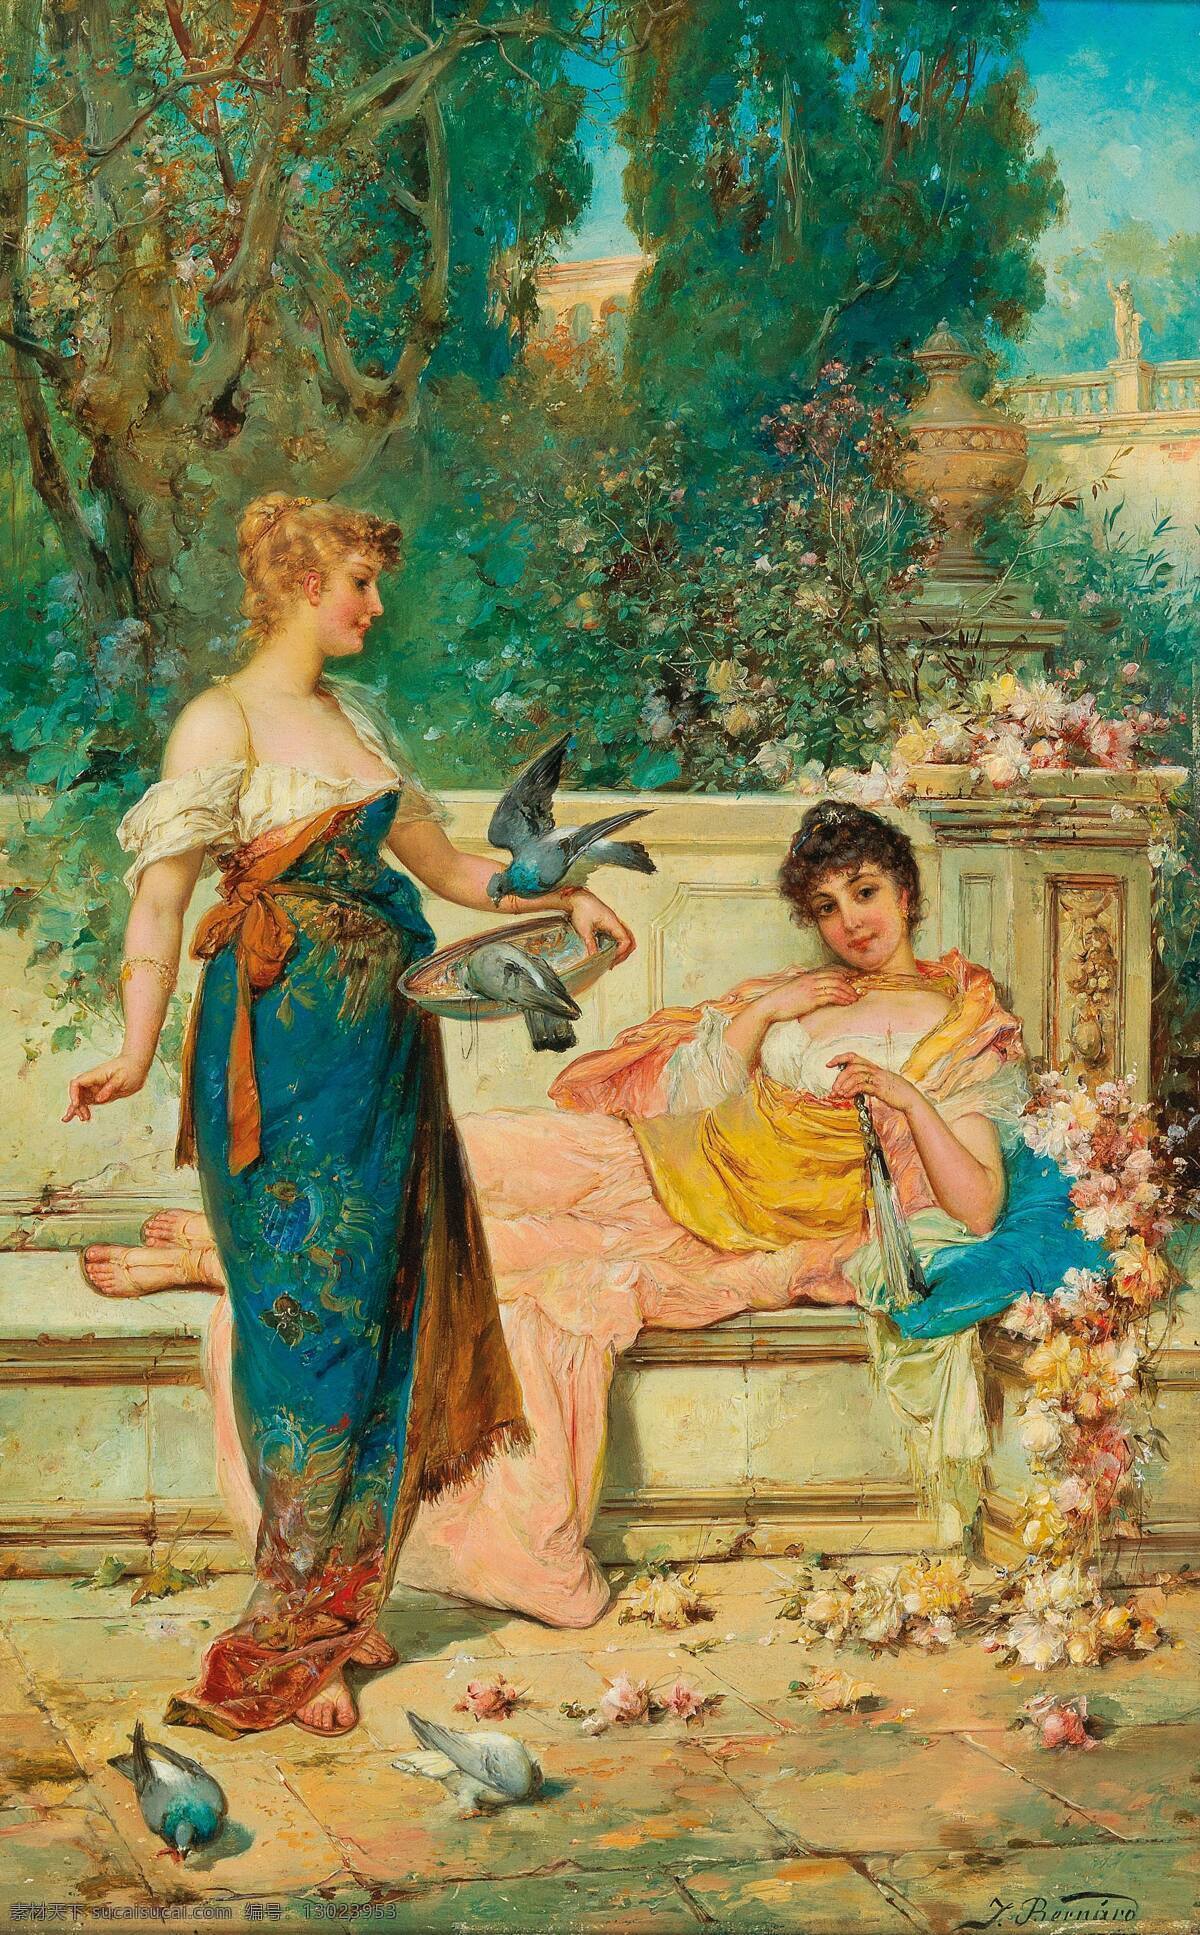 汉斯 扎 兹 卡 作品 奥地利画家 两位美女 喂鸽子 新浪漫主义 画派 19世纪油画 油画 文化艺术 绘画书法